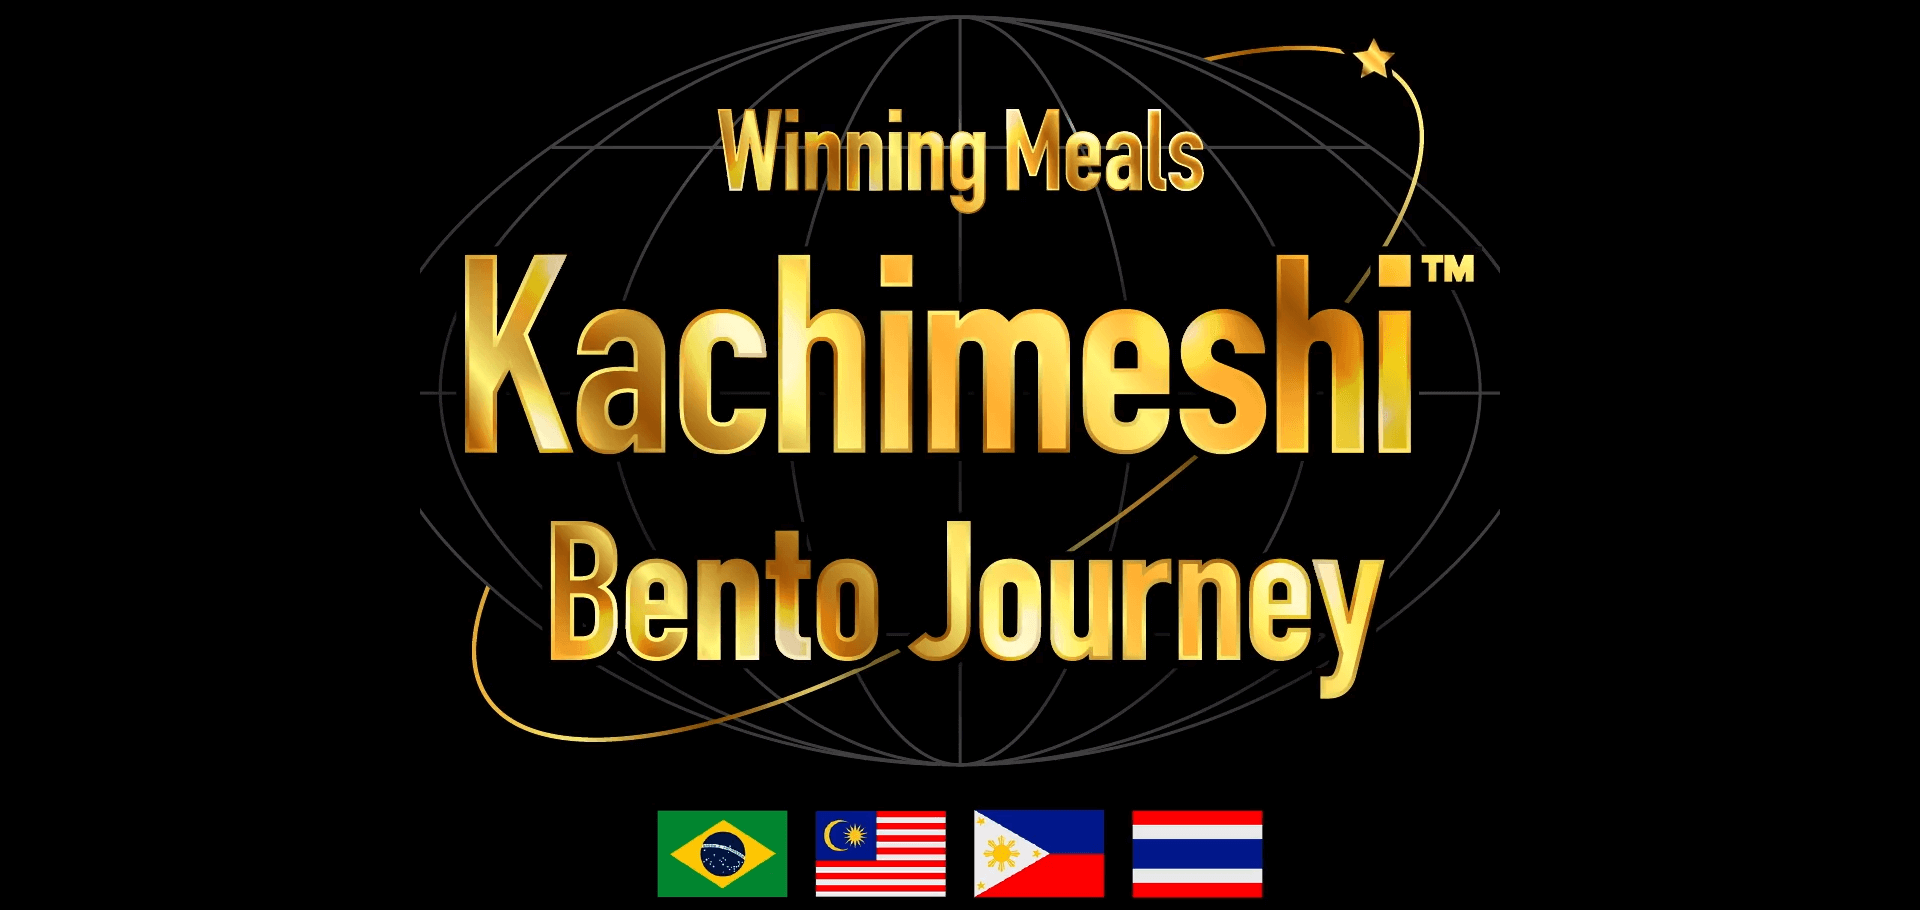 Comidas ganadoras Kachimeshi Bento Journey